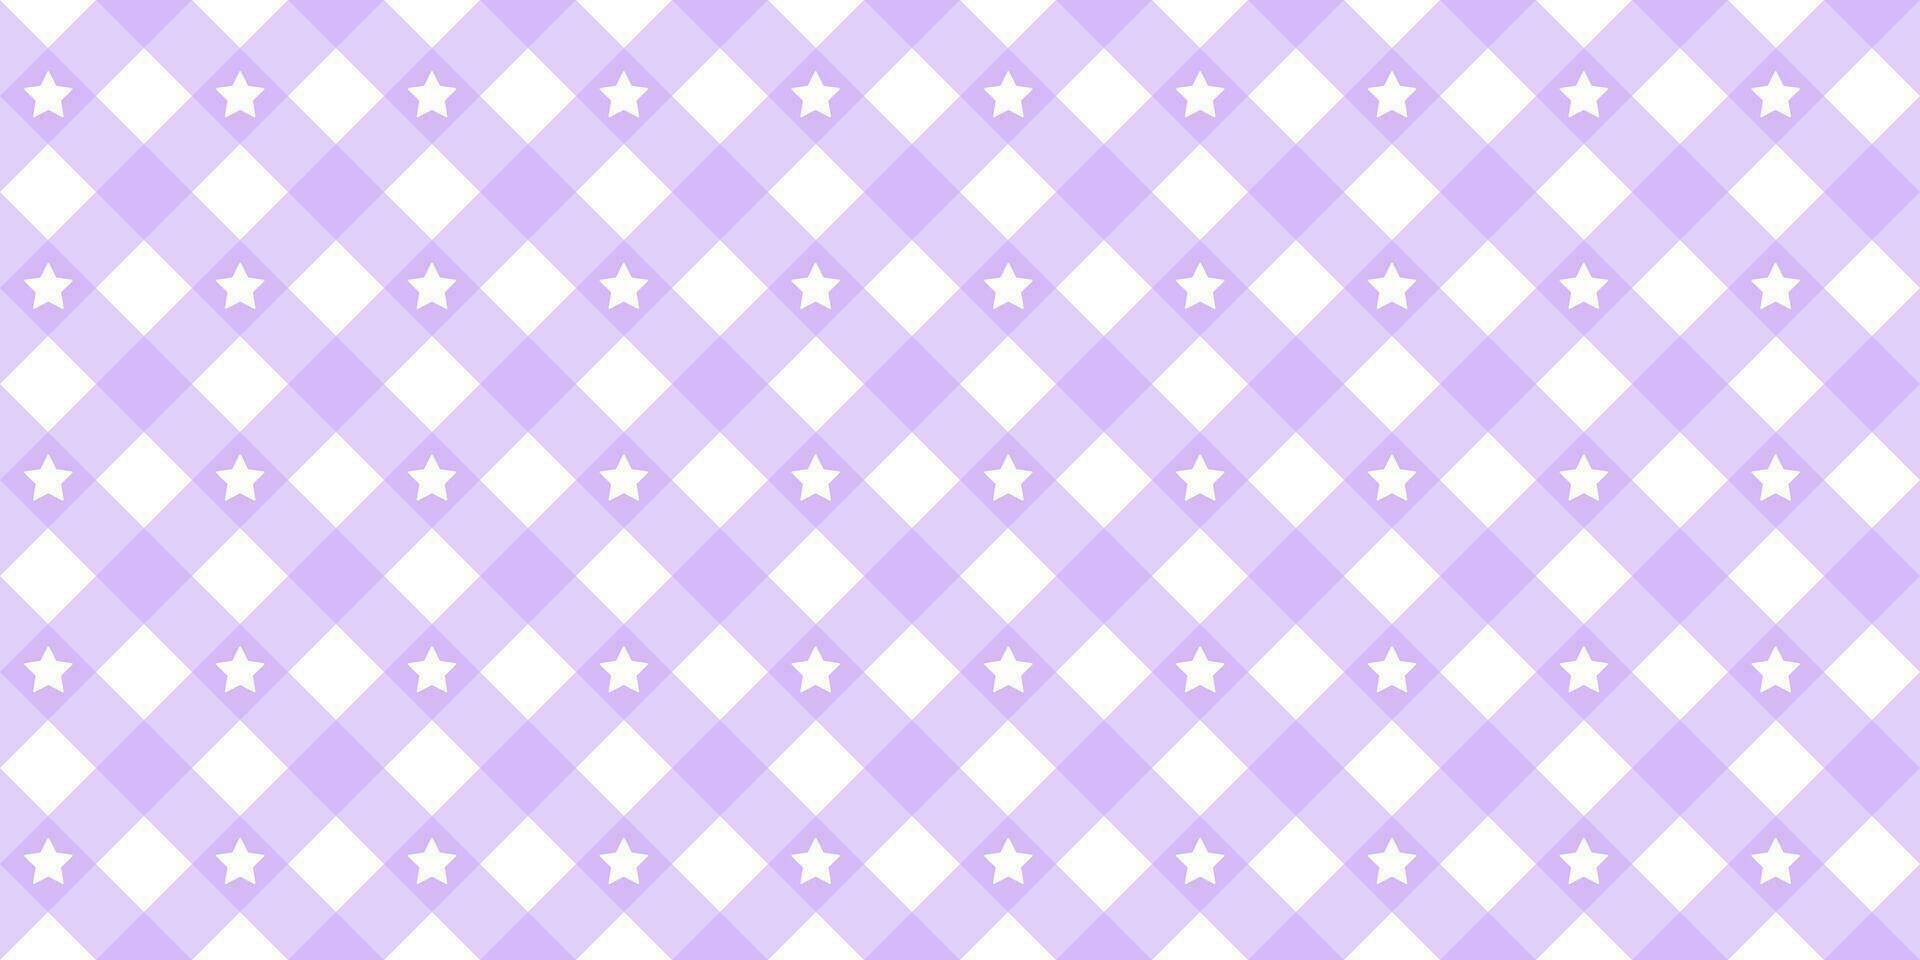 Gingham Star diagonal nahtlos Muster im lila Pastell- Farbe. vichy Plaid Design zum Ostern Urlaub Textil- dekorativ. Vektor kariert Muster zum Stoff - - Decke, Tischdecke, Kleid, Serviette.